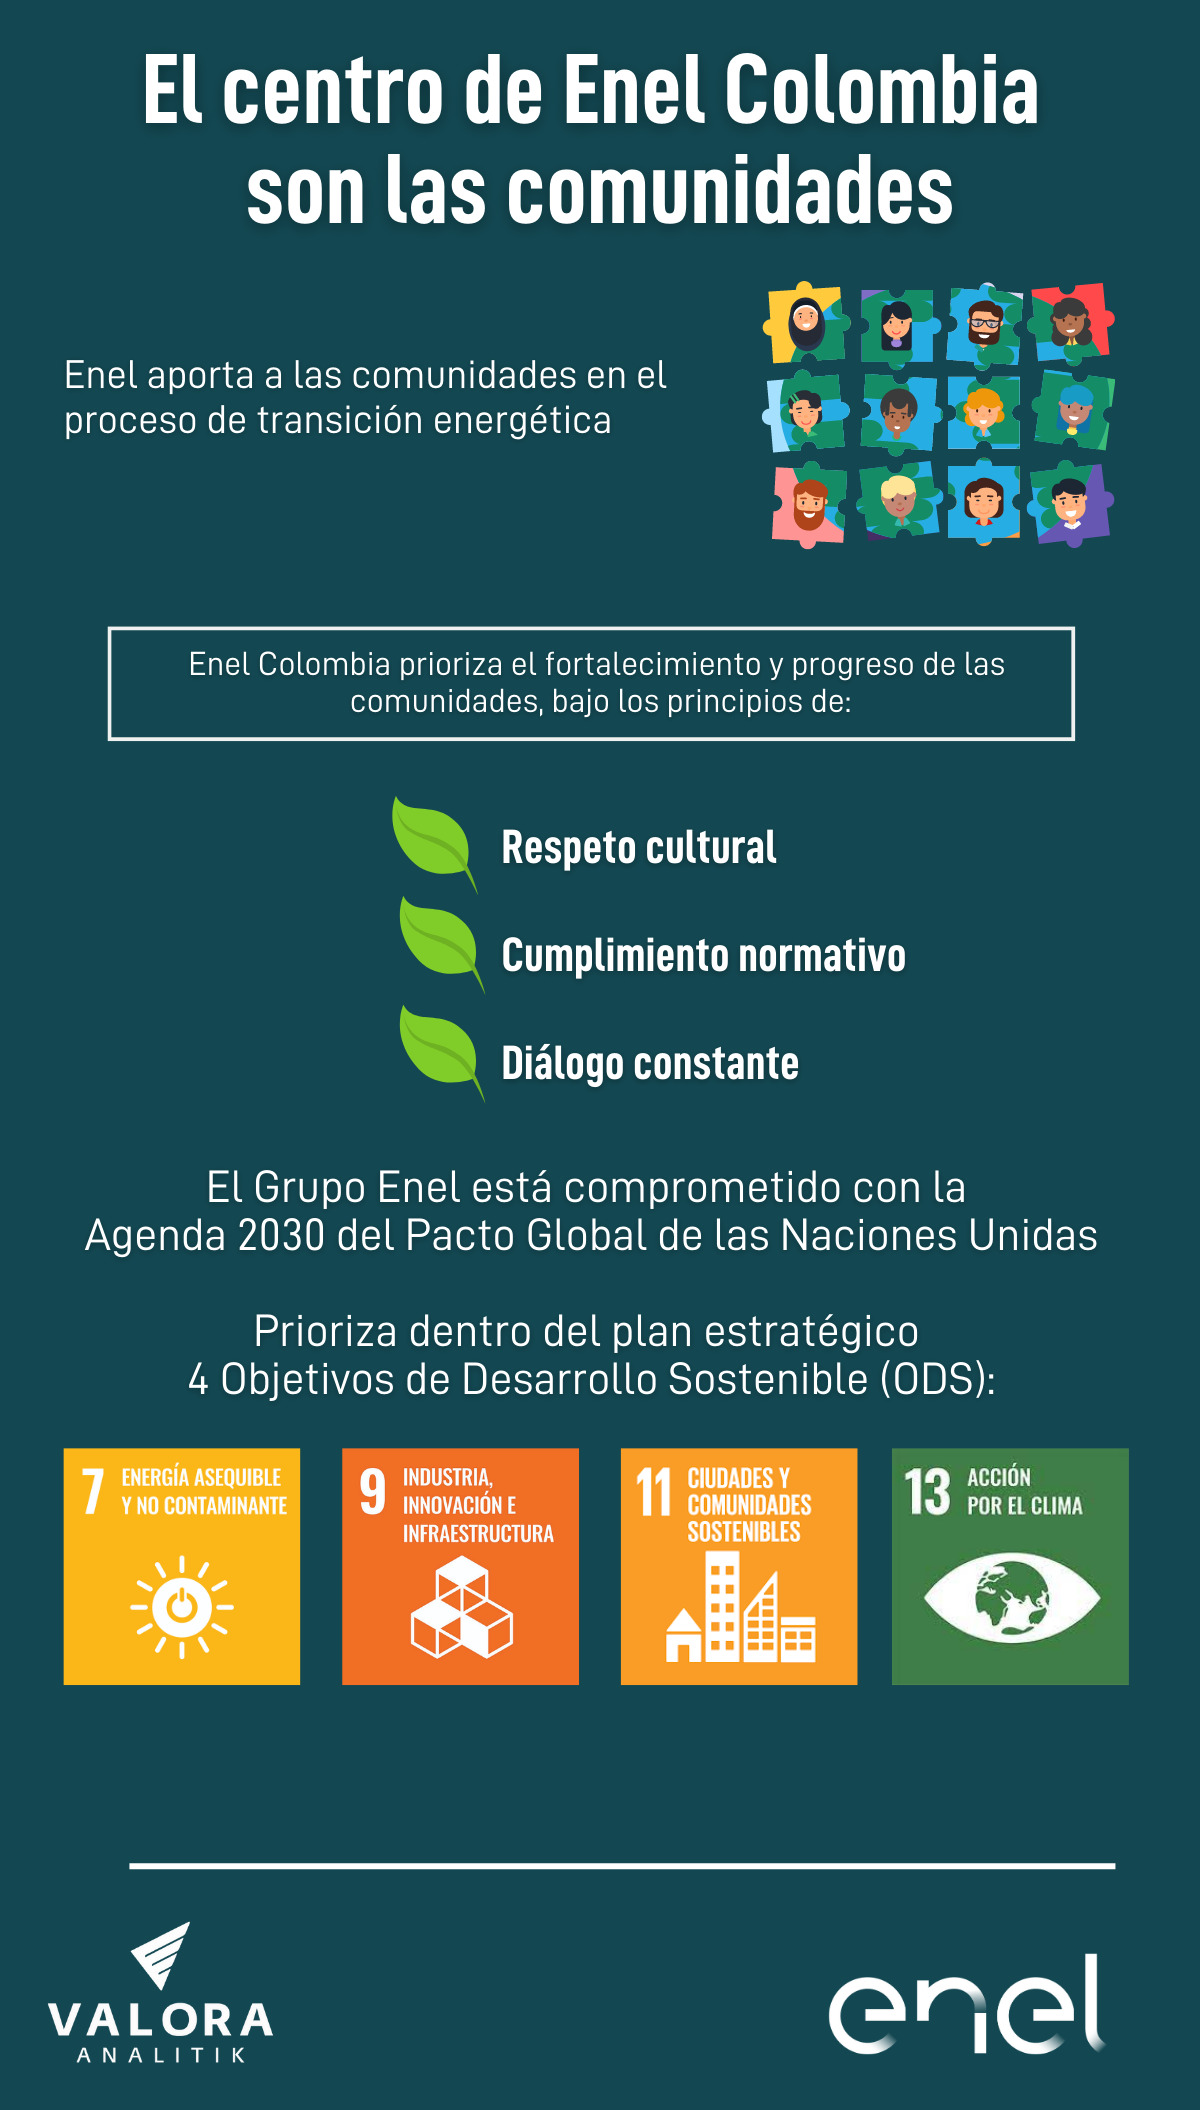 Comunidades, uno de los focos de Enel Colombia para la transición energética